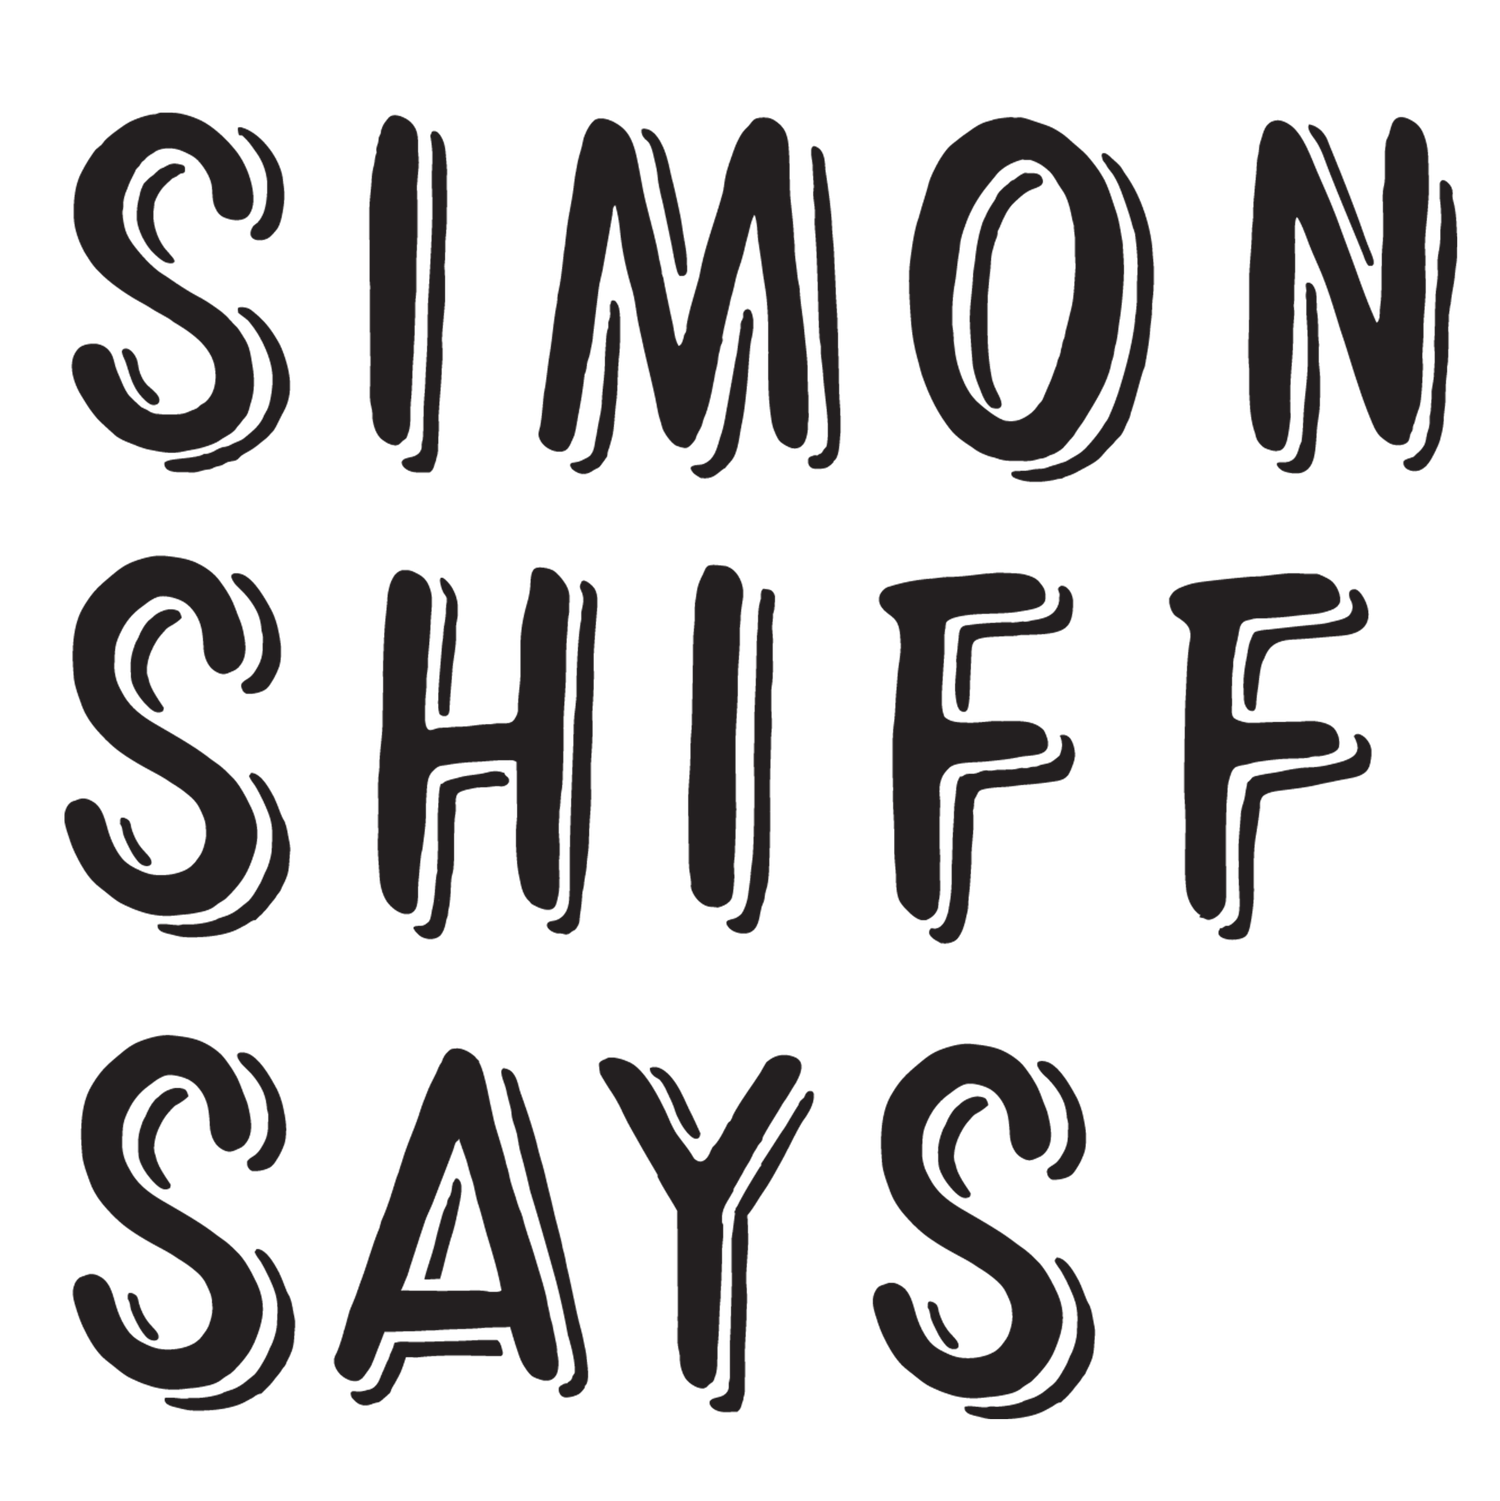 Simon Shiff Says